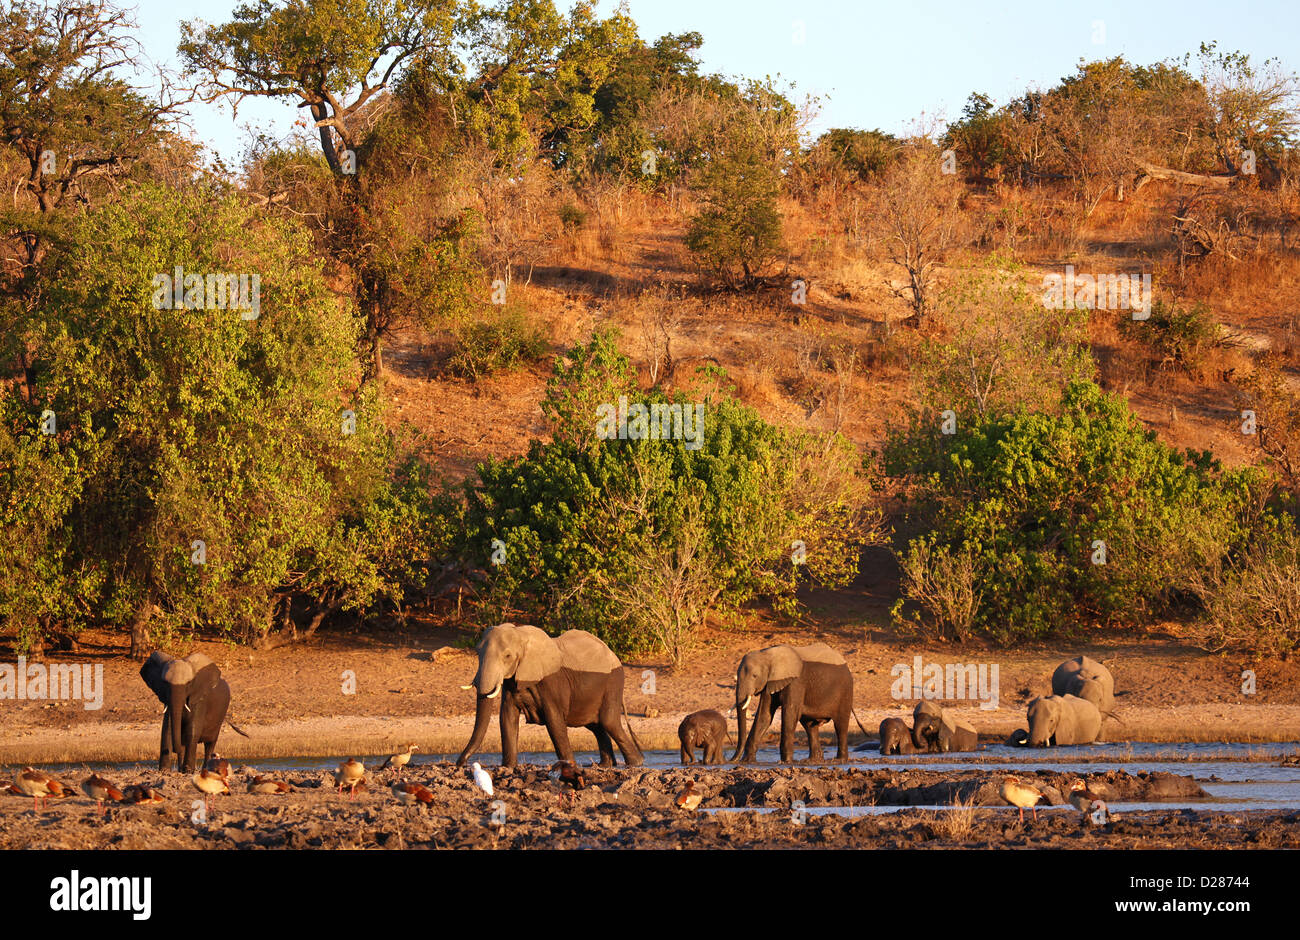 Loxodonta africana : les éléphants à la Riverside de Chobe, Botsuana Banque D'Images